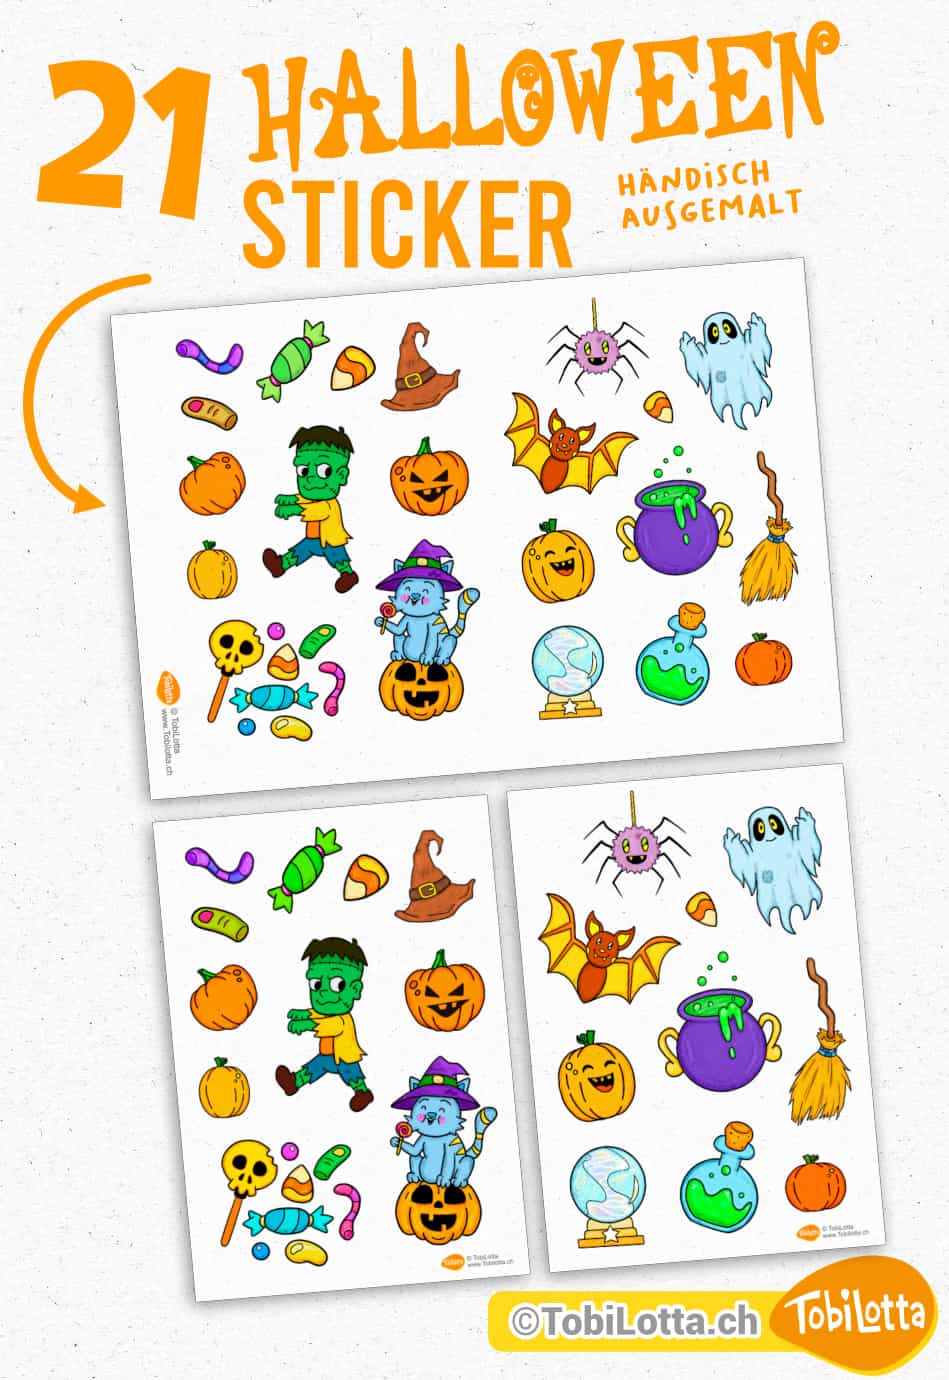 63349 Halloween sticker Aufkleber Badges zum Ausdrucken Ausmalvorlage Halloween Katze, Kürbis, Frankenstein, Süssigkeiten, Hexenbesen, Hexenhut, Hexenkugel